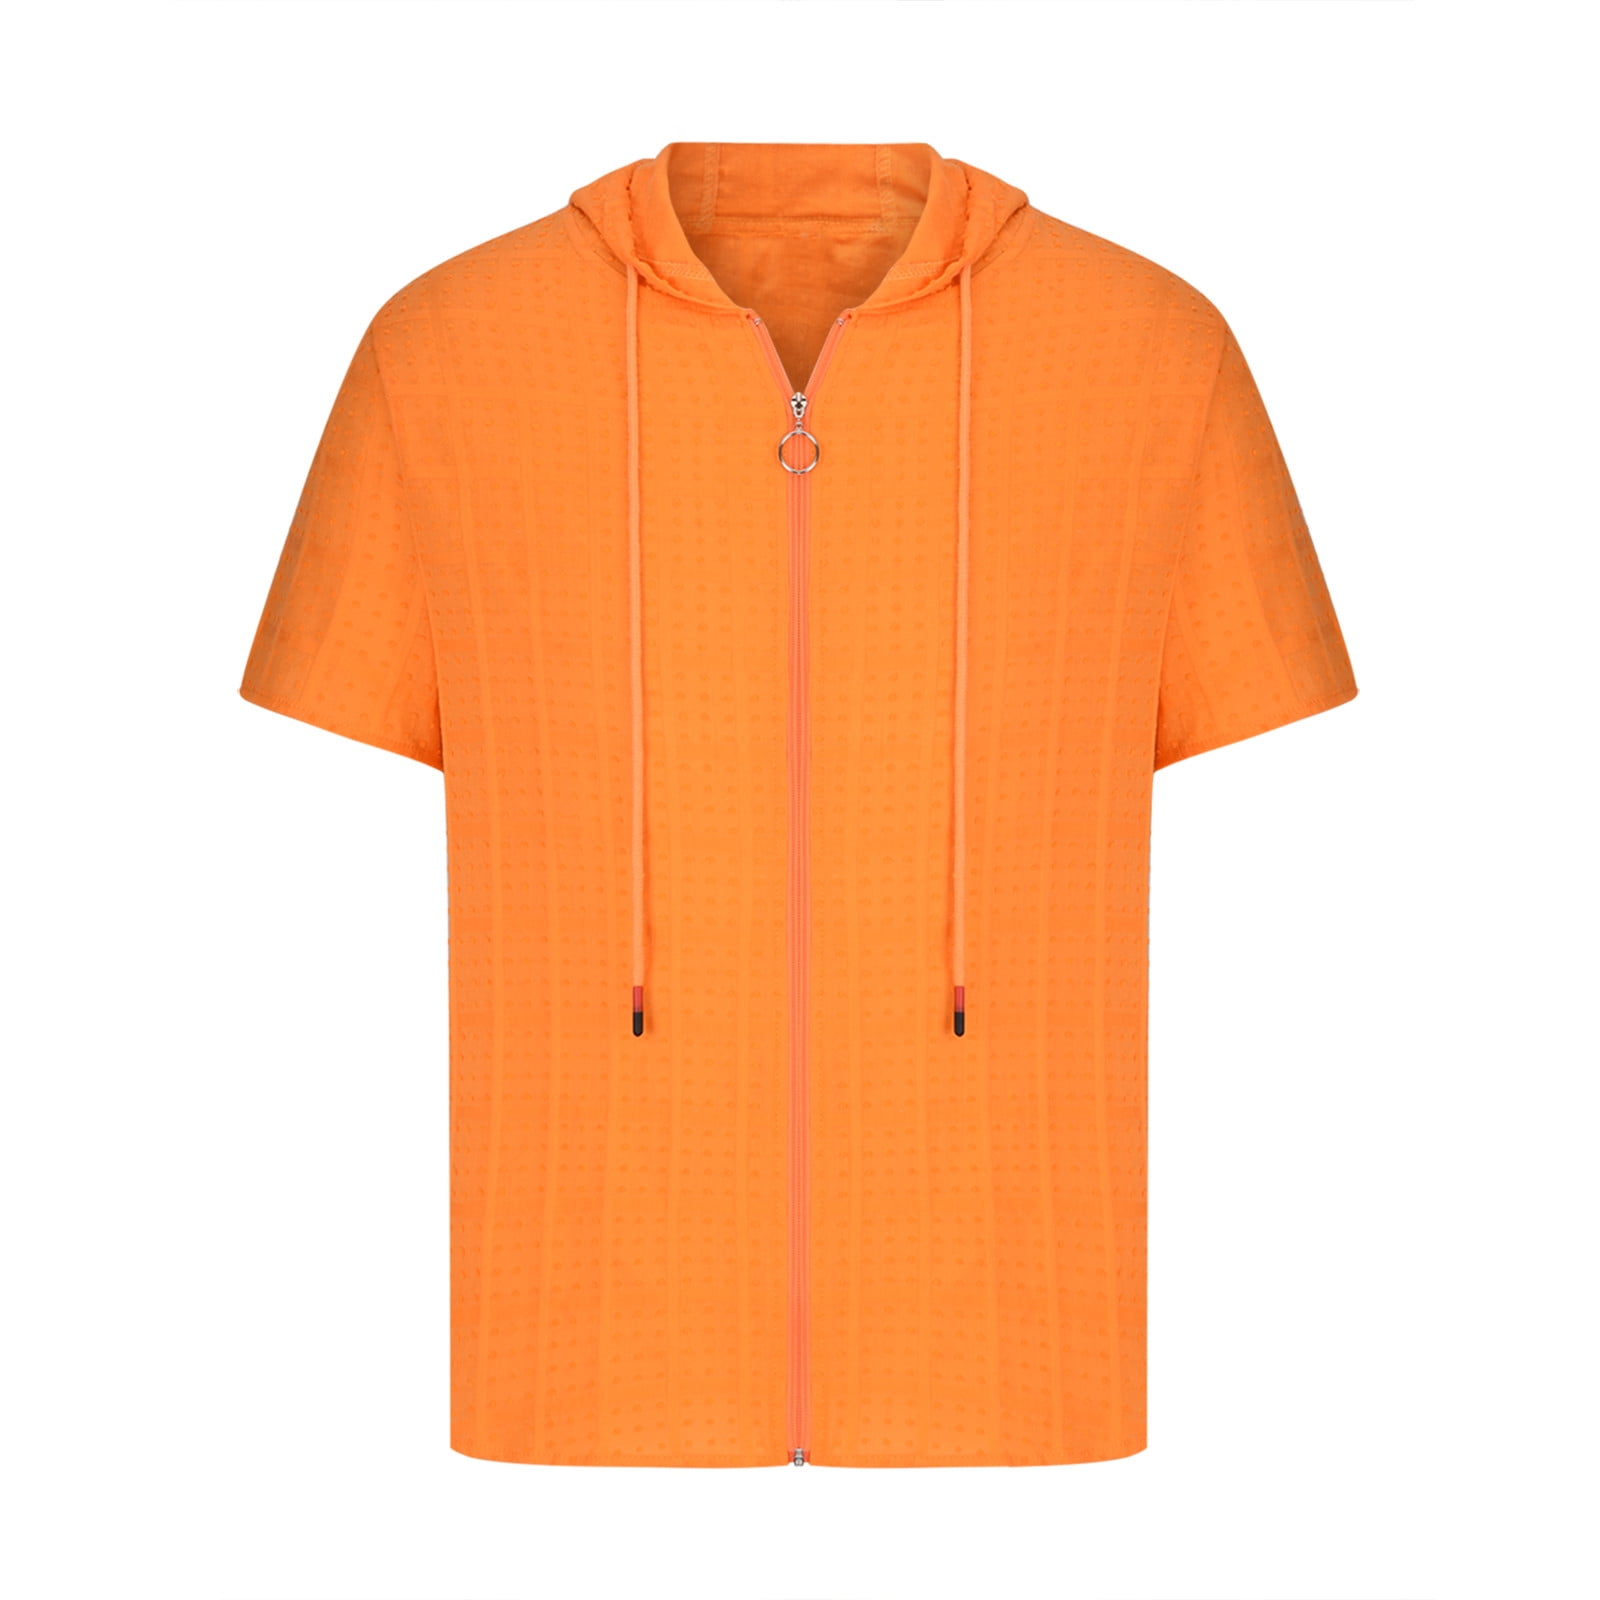 DxhmoneyHX Mens Short Sleeve Hooded T Shirt Casual Cotton Blend Zipper Hoodie  Shirt Summer Loose Fit Top 